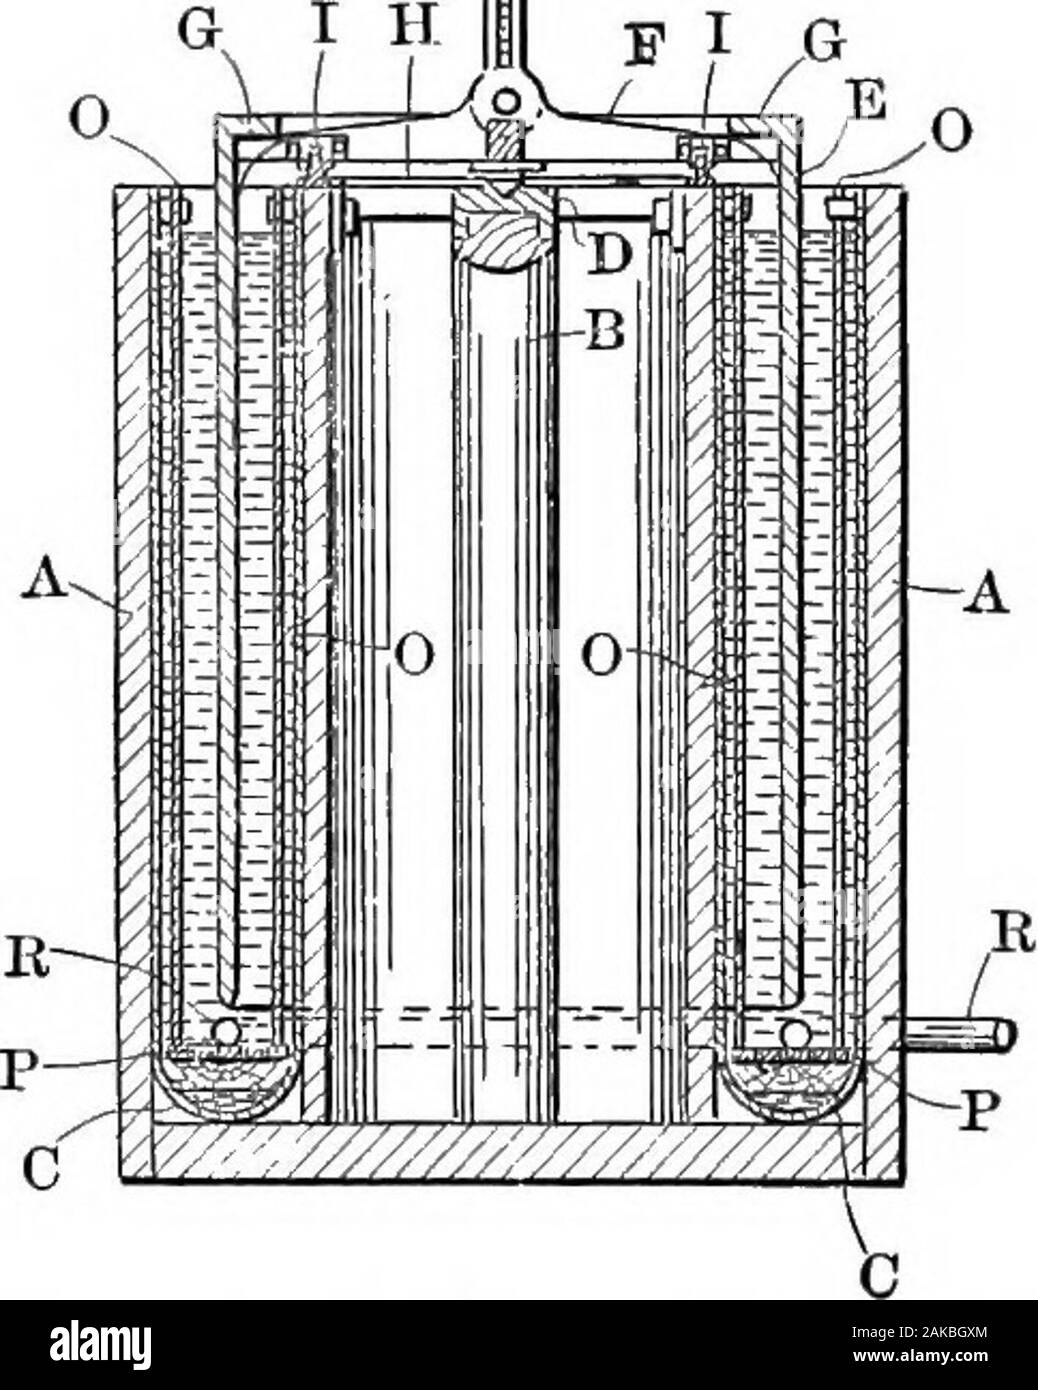 L'hydrométallurgie du cuivre . Fig. 51.-Coffin cathode renouvelable autonome. Une autre méthode d'atteindre le même but est de forcer l'air dans le réservoir et alors que l'électrolyse de l'électrolyte est en cours. Careshould être utilisé si l'électrolyte est agité avec de l'air, que l'agitation isquite, uniforme dans toutes les parties de l'électrolyseur. Les agitateurs,parfois travailler mutuellement entre les électrodes sont utilisées pour mieux l'air advantagethan, et l'agitation est susceptible d'être plus uniforme. L'électrolyte,empiétant contre les cathodes jets a donné de bons résultats, mais est maintenant processus électrolytique Banque D'Images